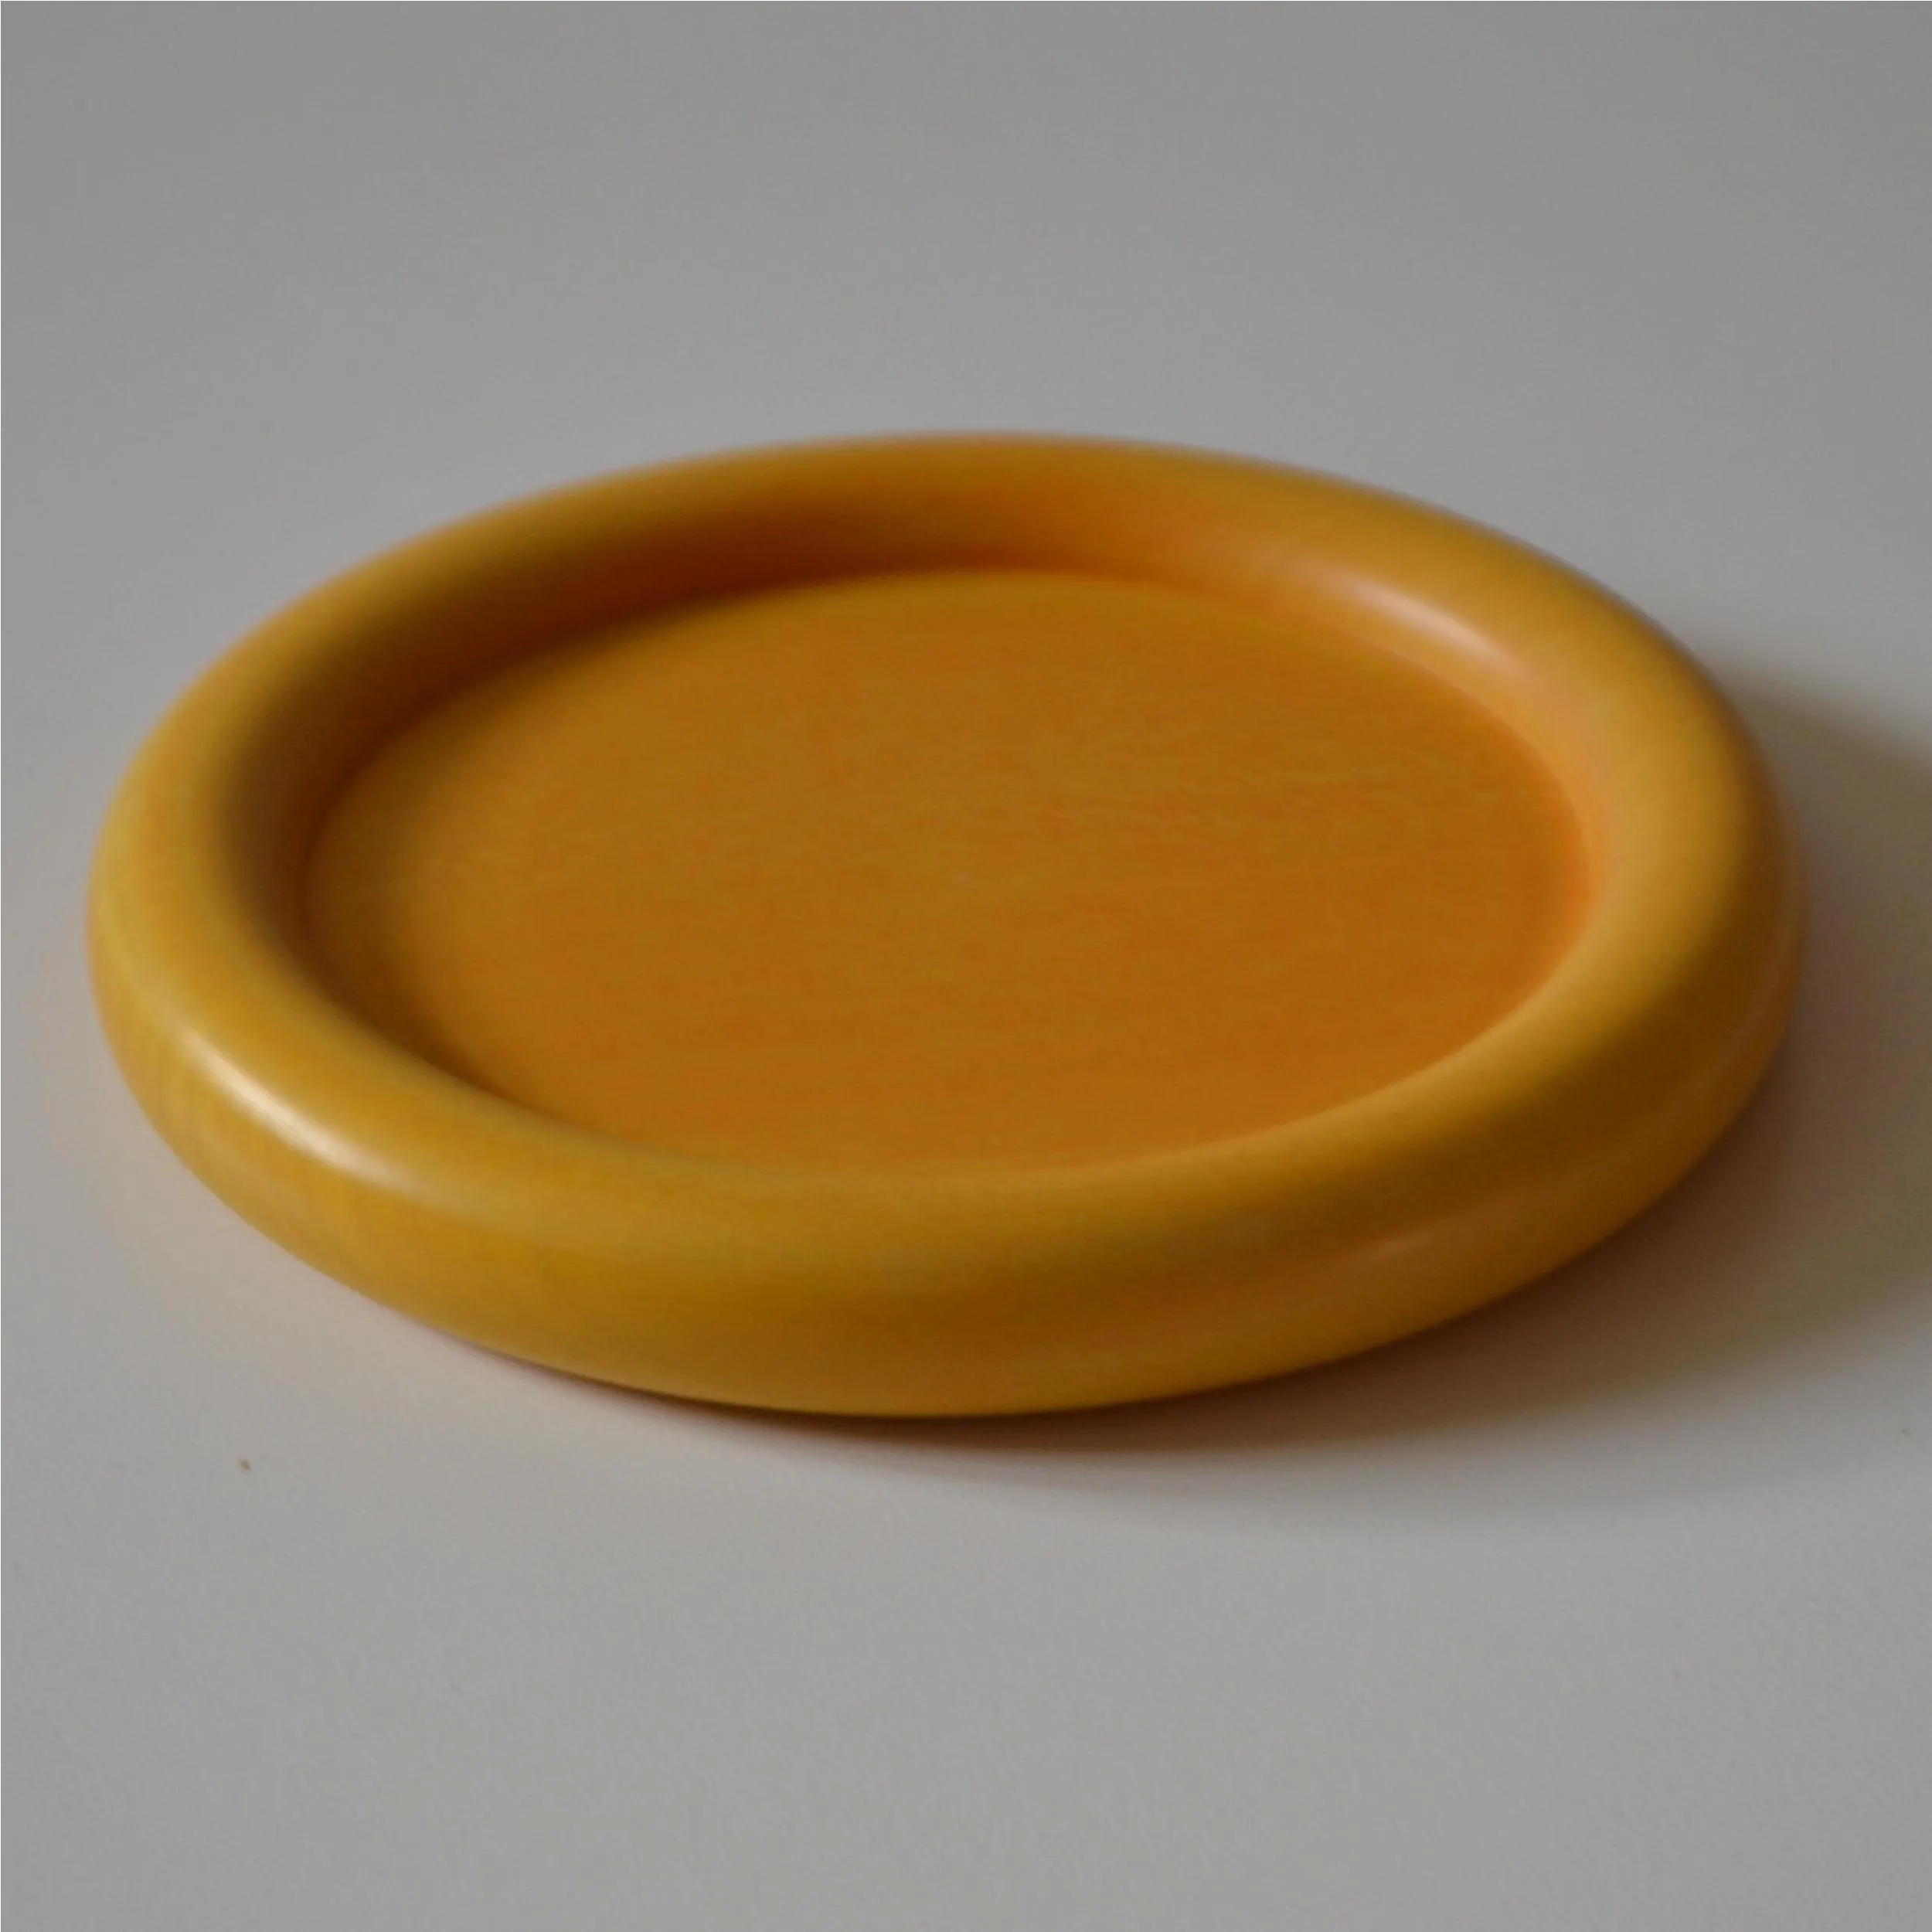 Sottobottiglia in legno di tiglio tornito a mano diametro 13xh1,5 cm Può essere usato anche come piattino per il pane coloregiallo